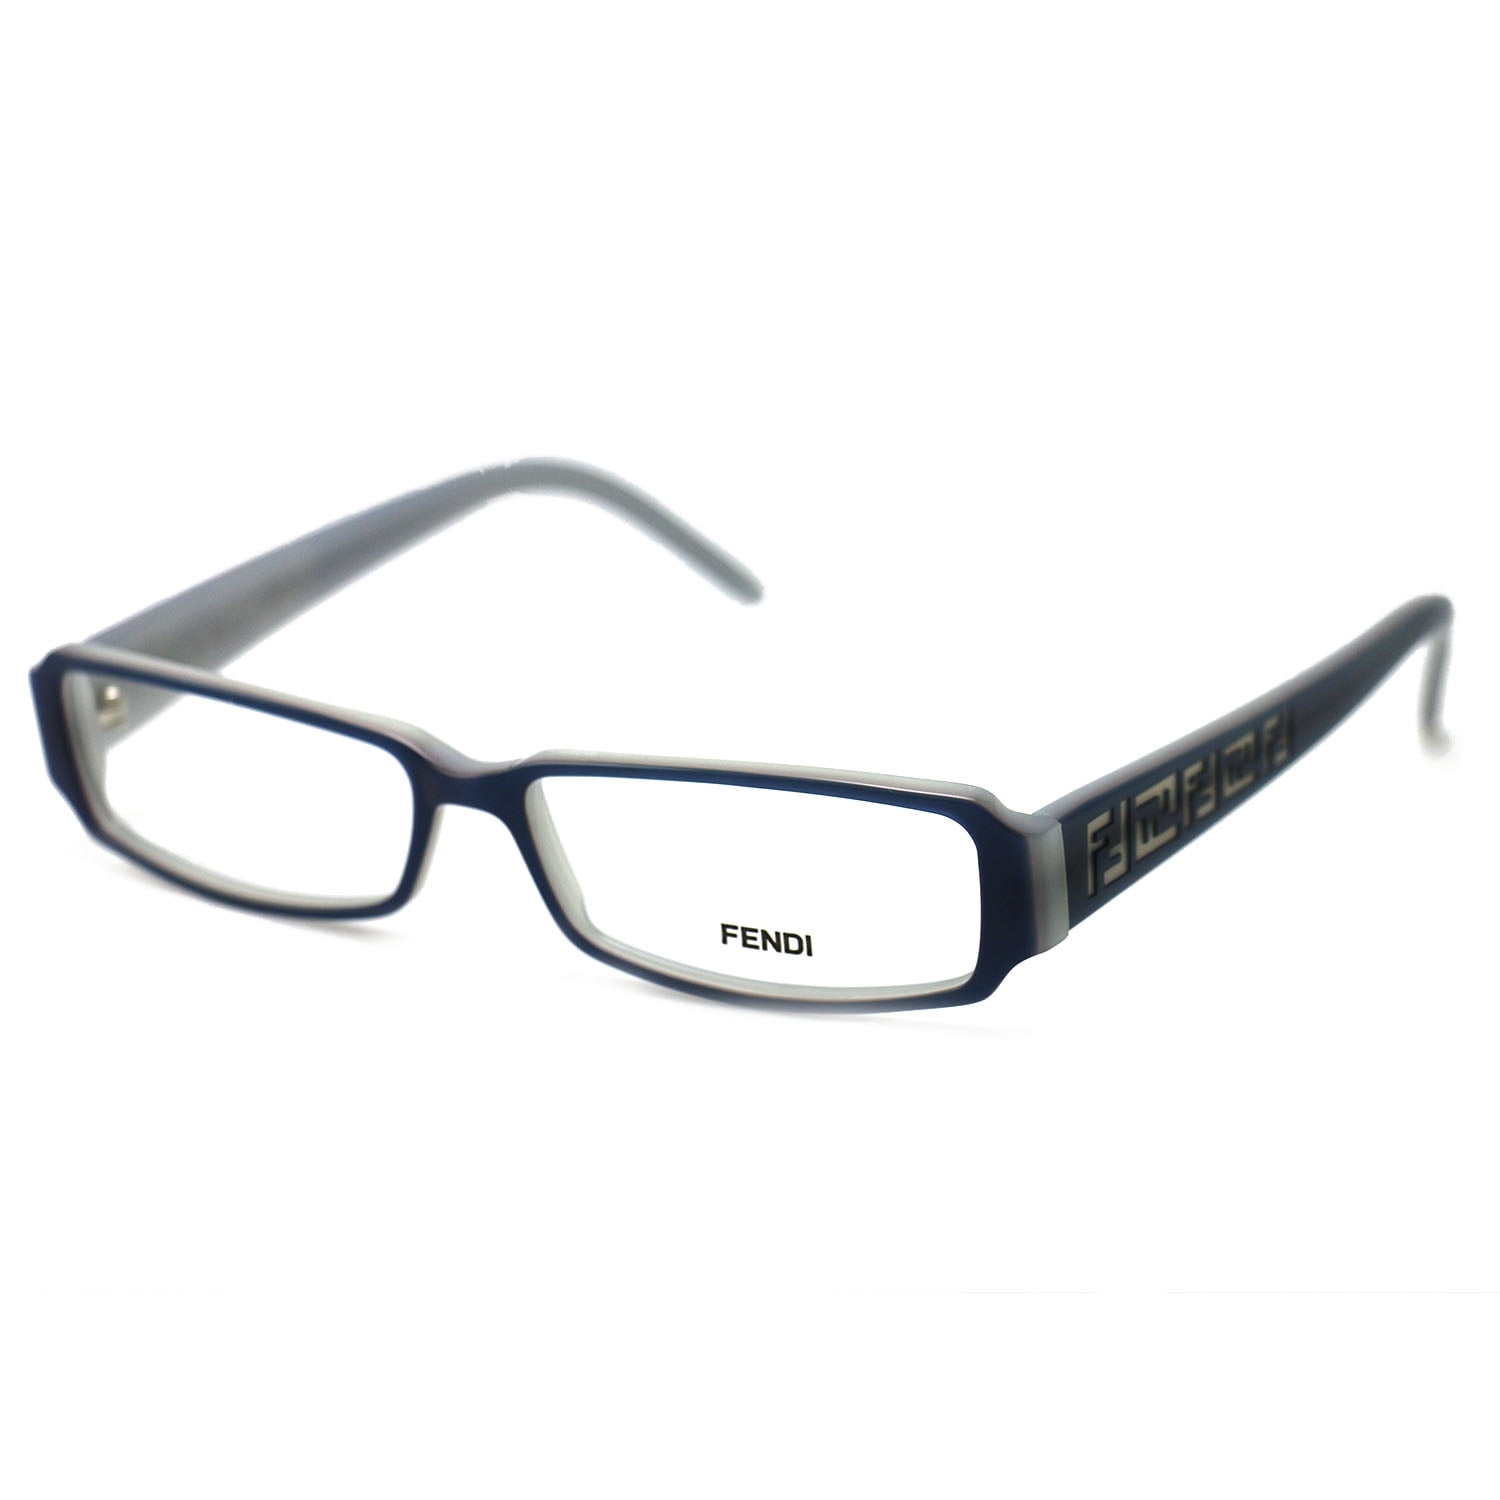 Fendi Womens Eyeglasses F664 429 Blue 53 14 140 Frames Rectangular